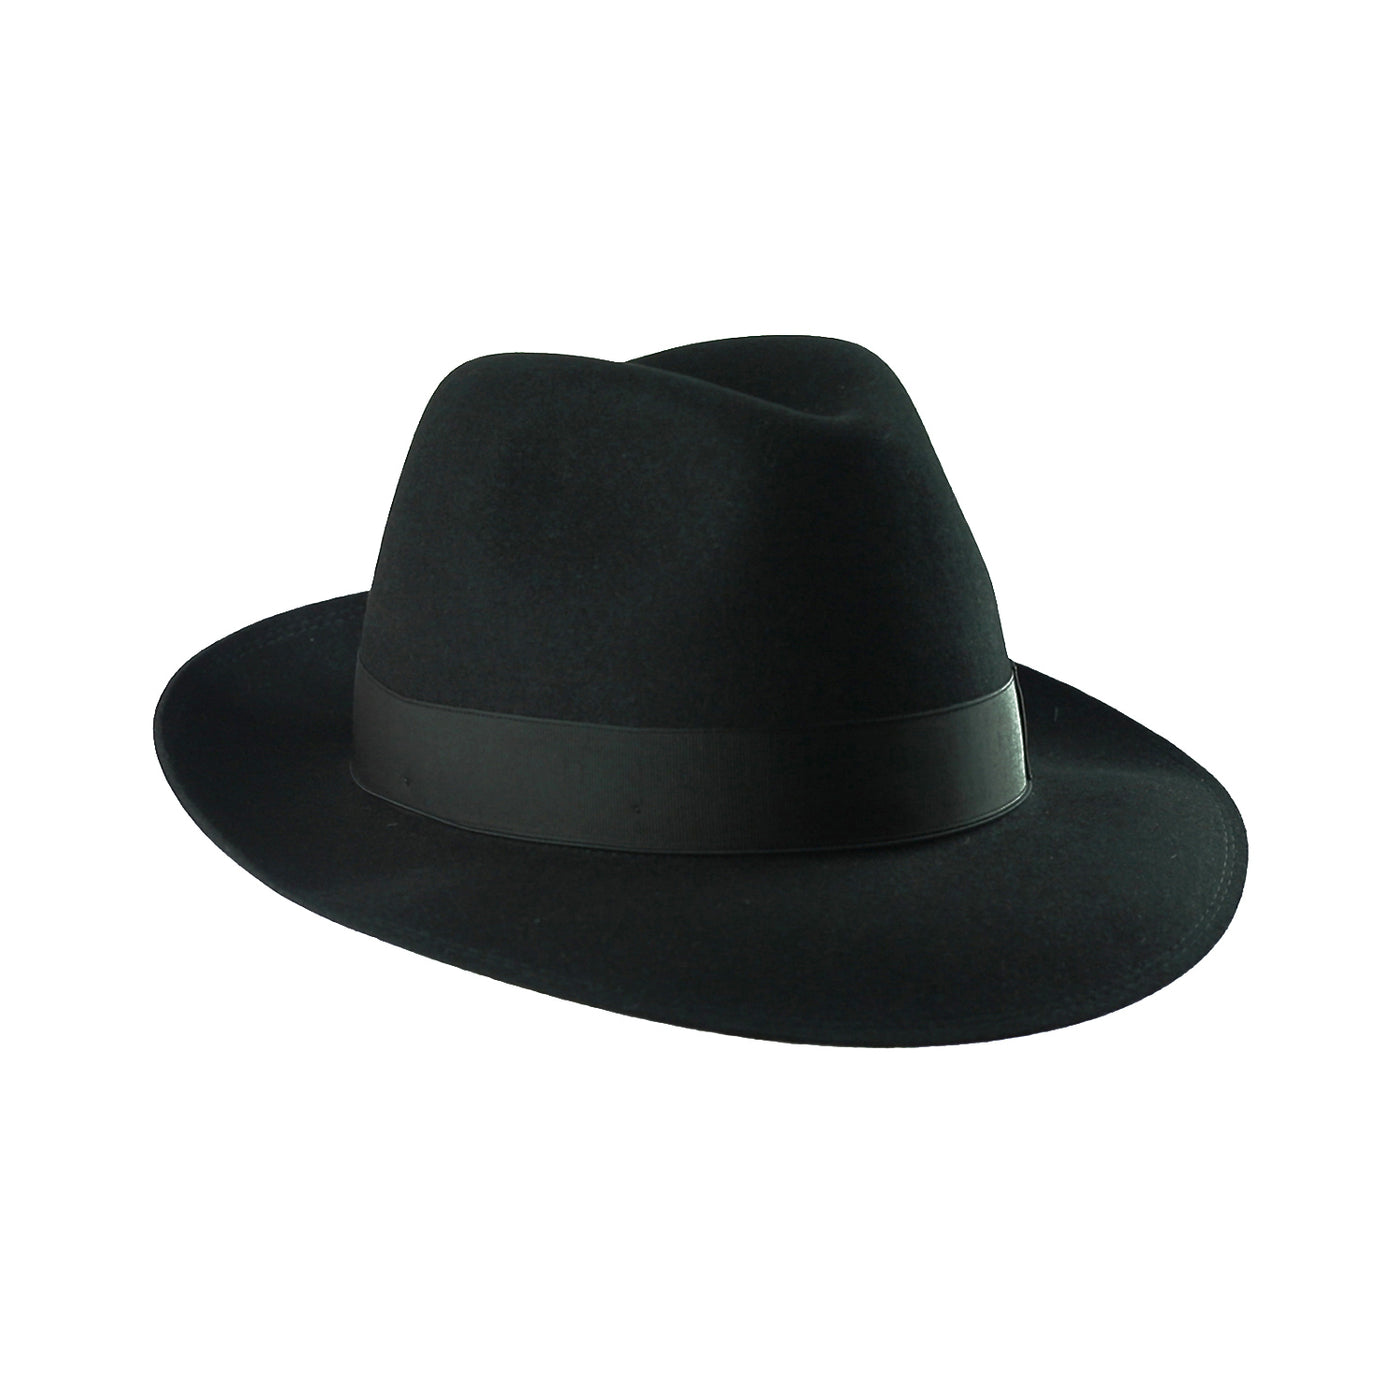 Torino 25, product_type] - Borsalino for Atica fedora hat